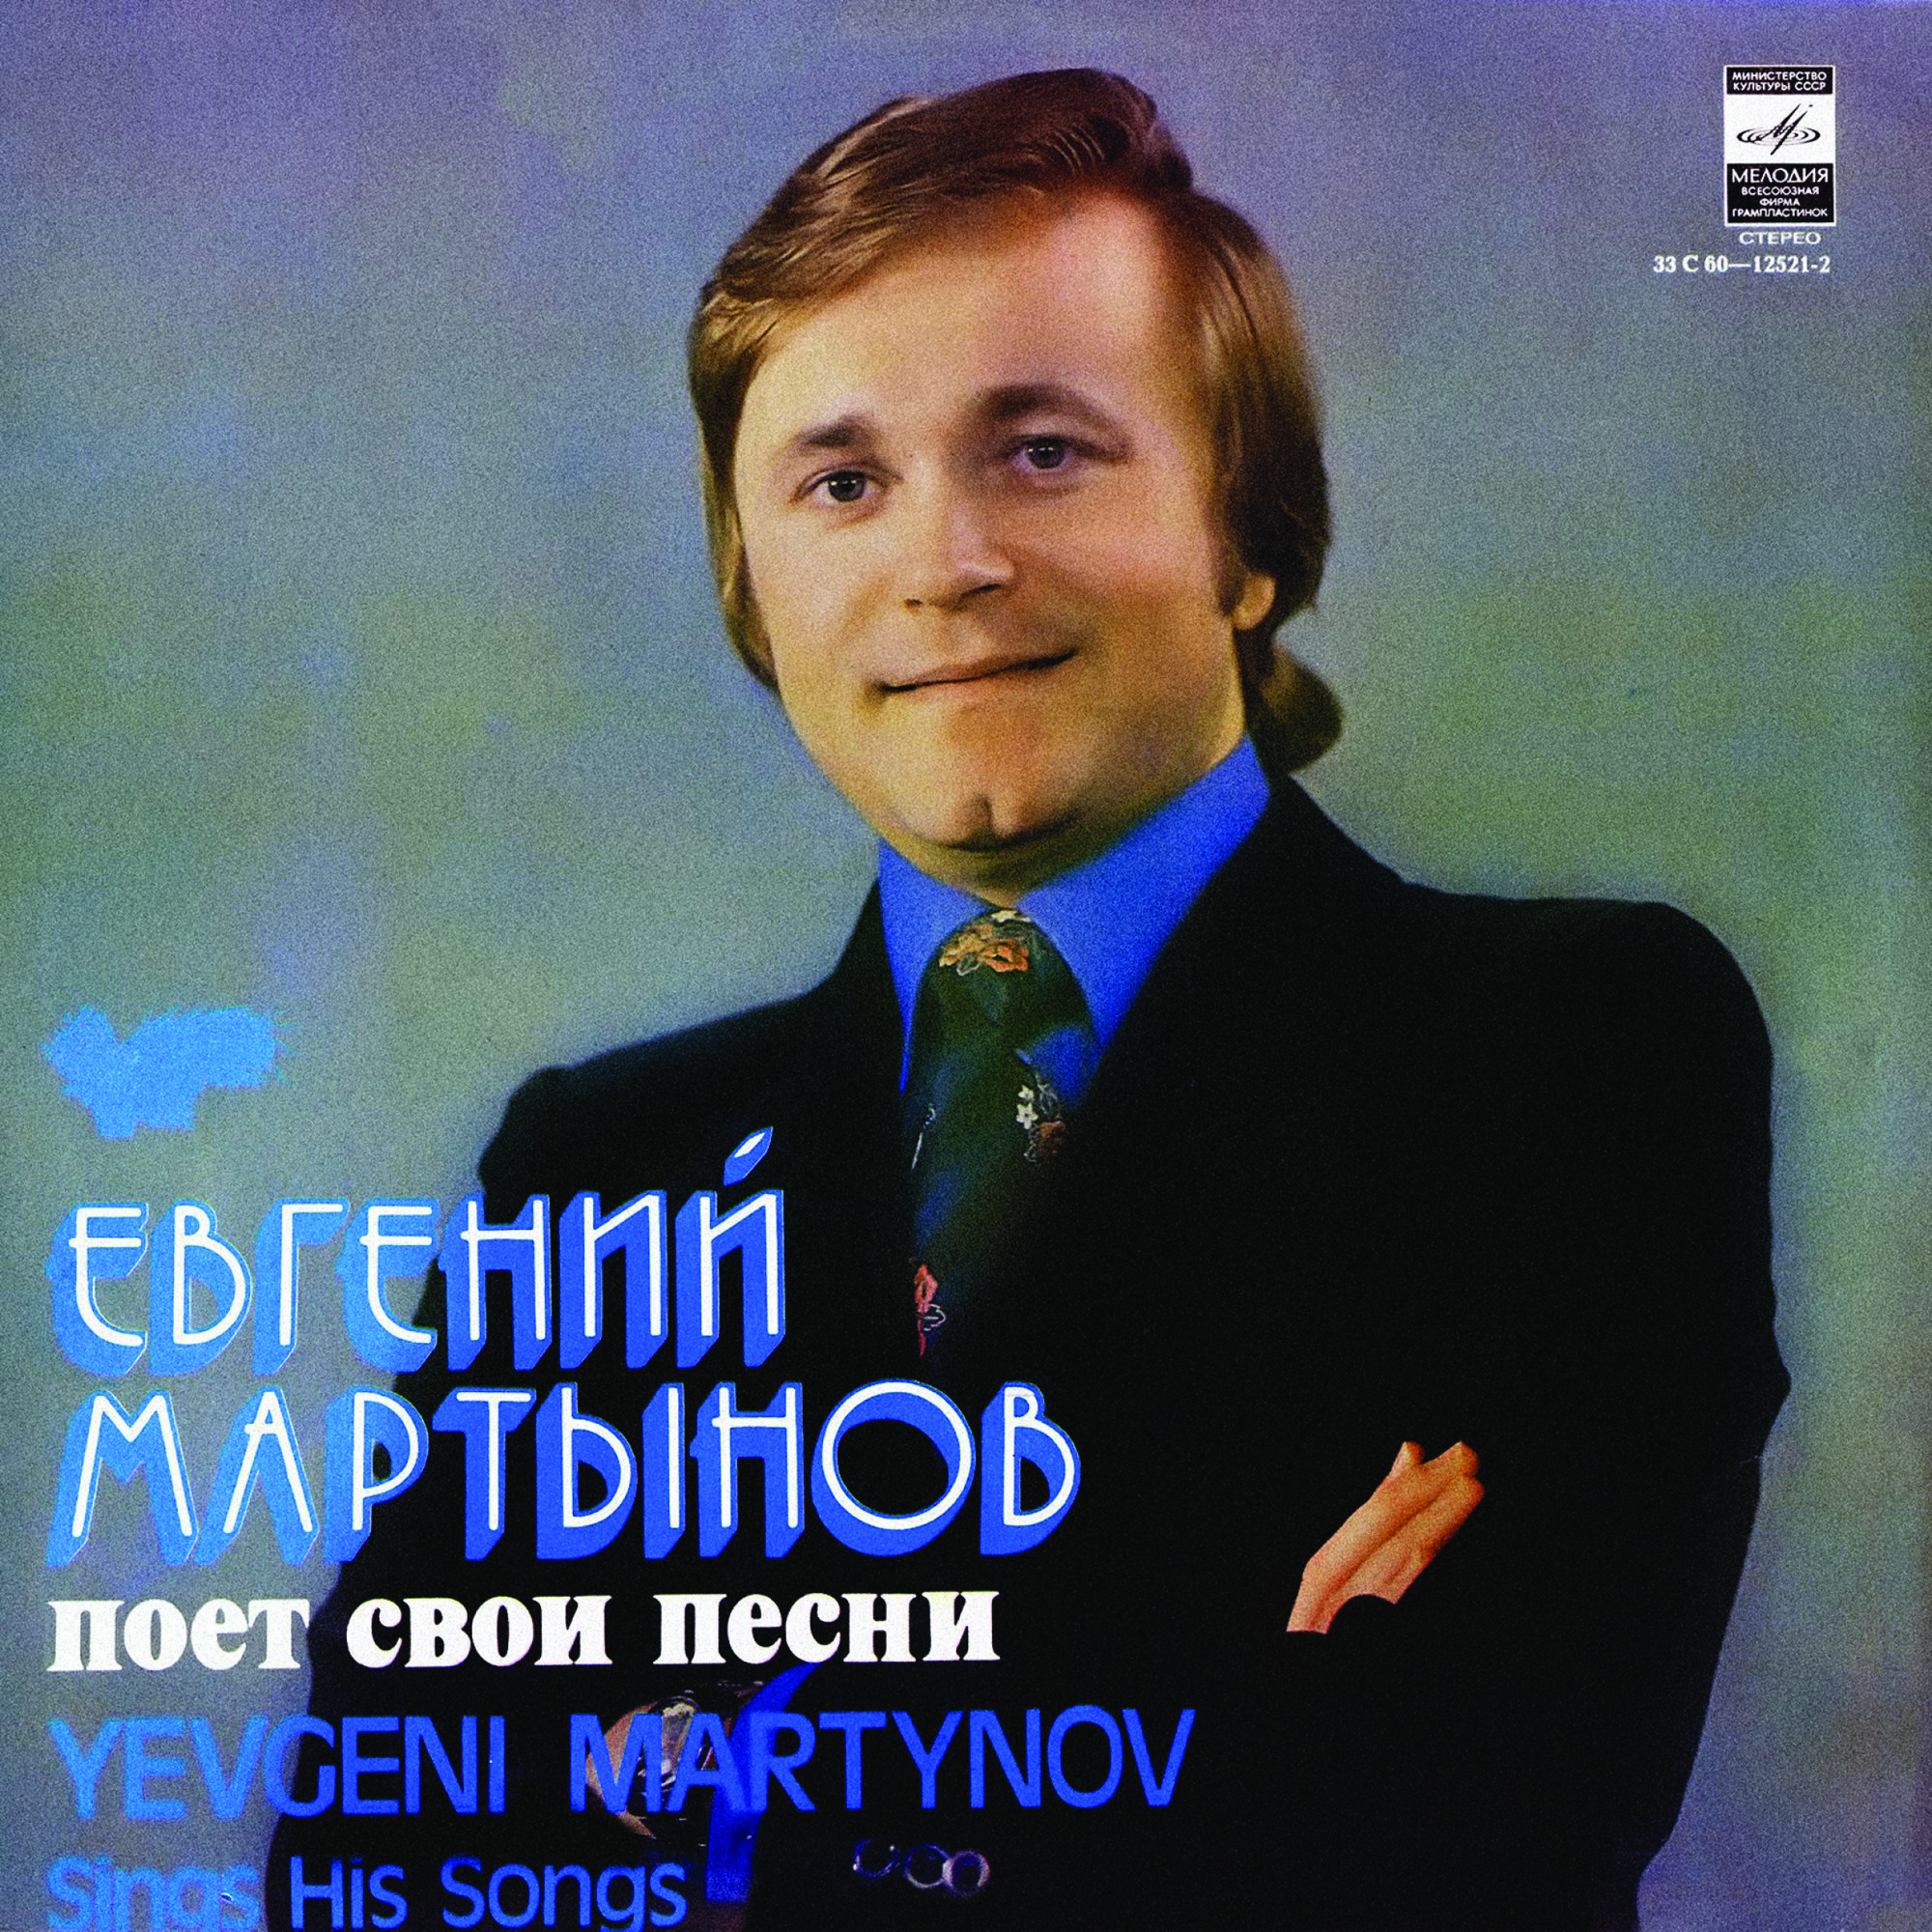 Евгений МАРТЫНОВ поет свои песни